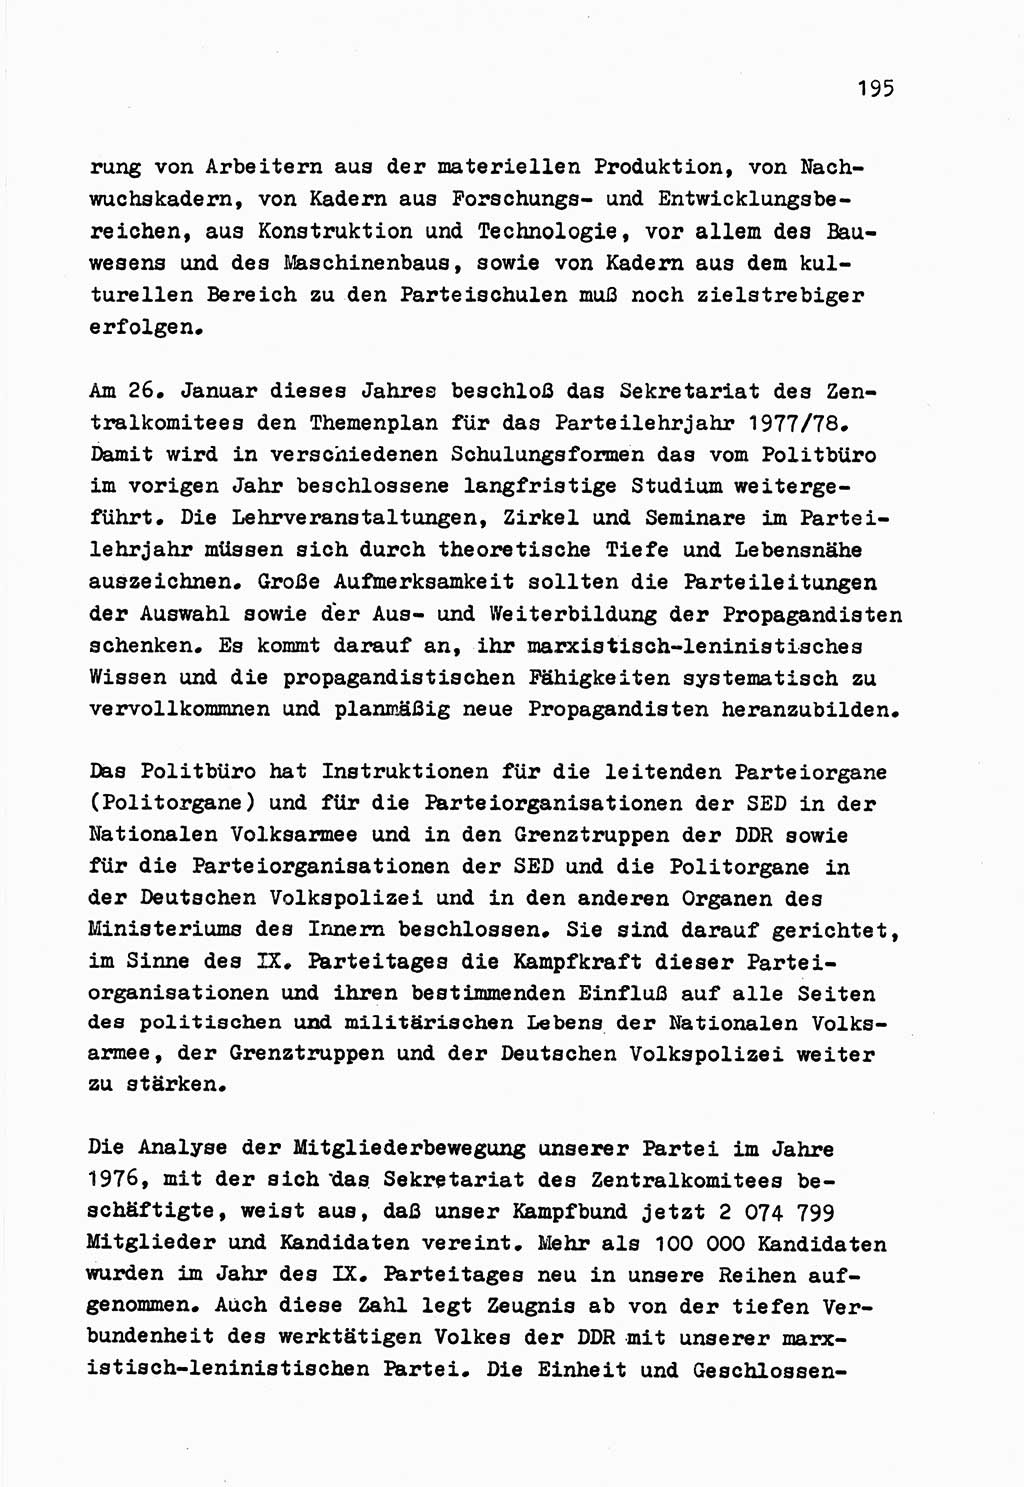 Zu Fragen der Parteiarbeit [Sozialistische Einheitspartei Deutschlands (SED) Deutsche Demokratische Republik (DDR)] 1979, Seite 195 (Fr. PA SED DDR 1979, S. 195)